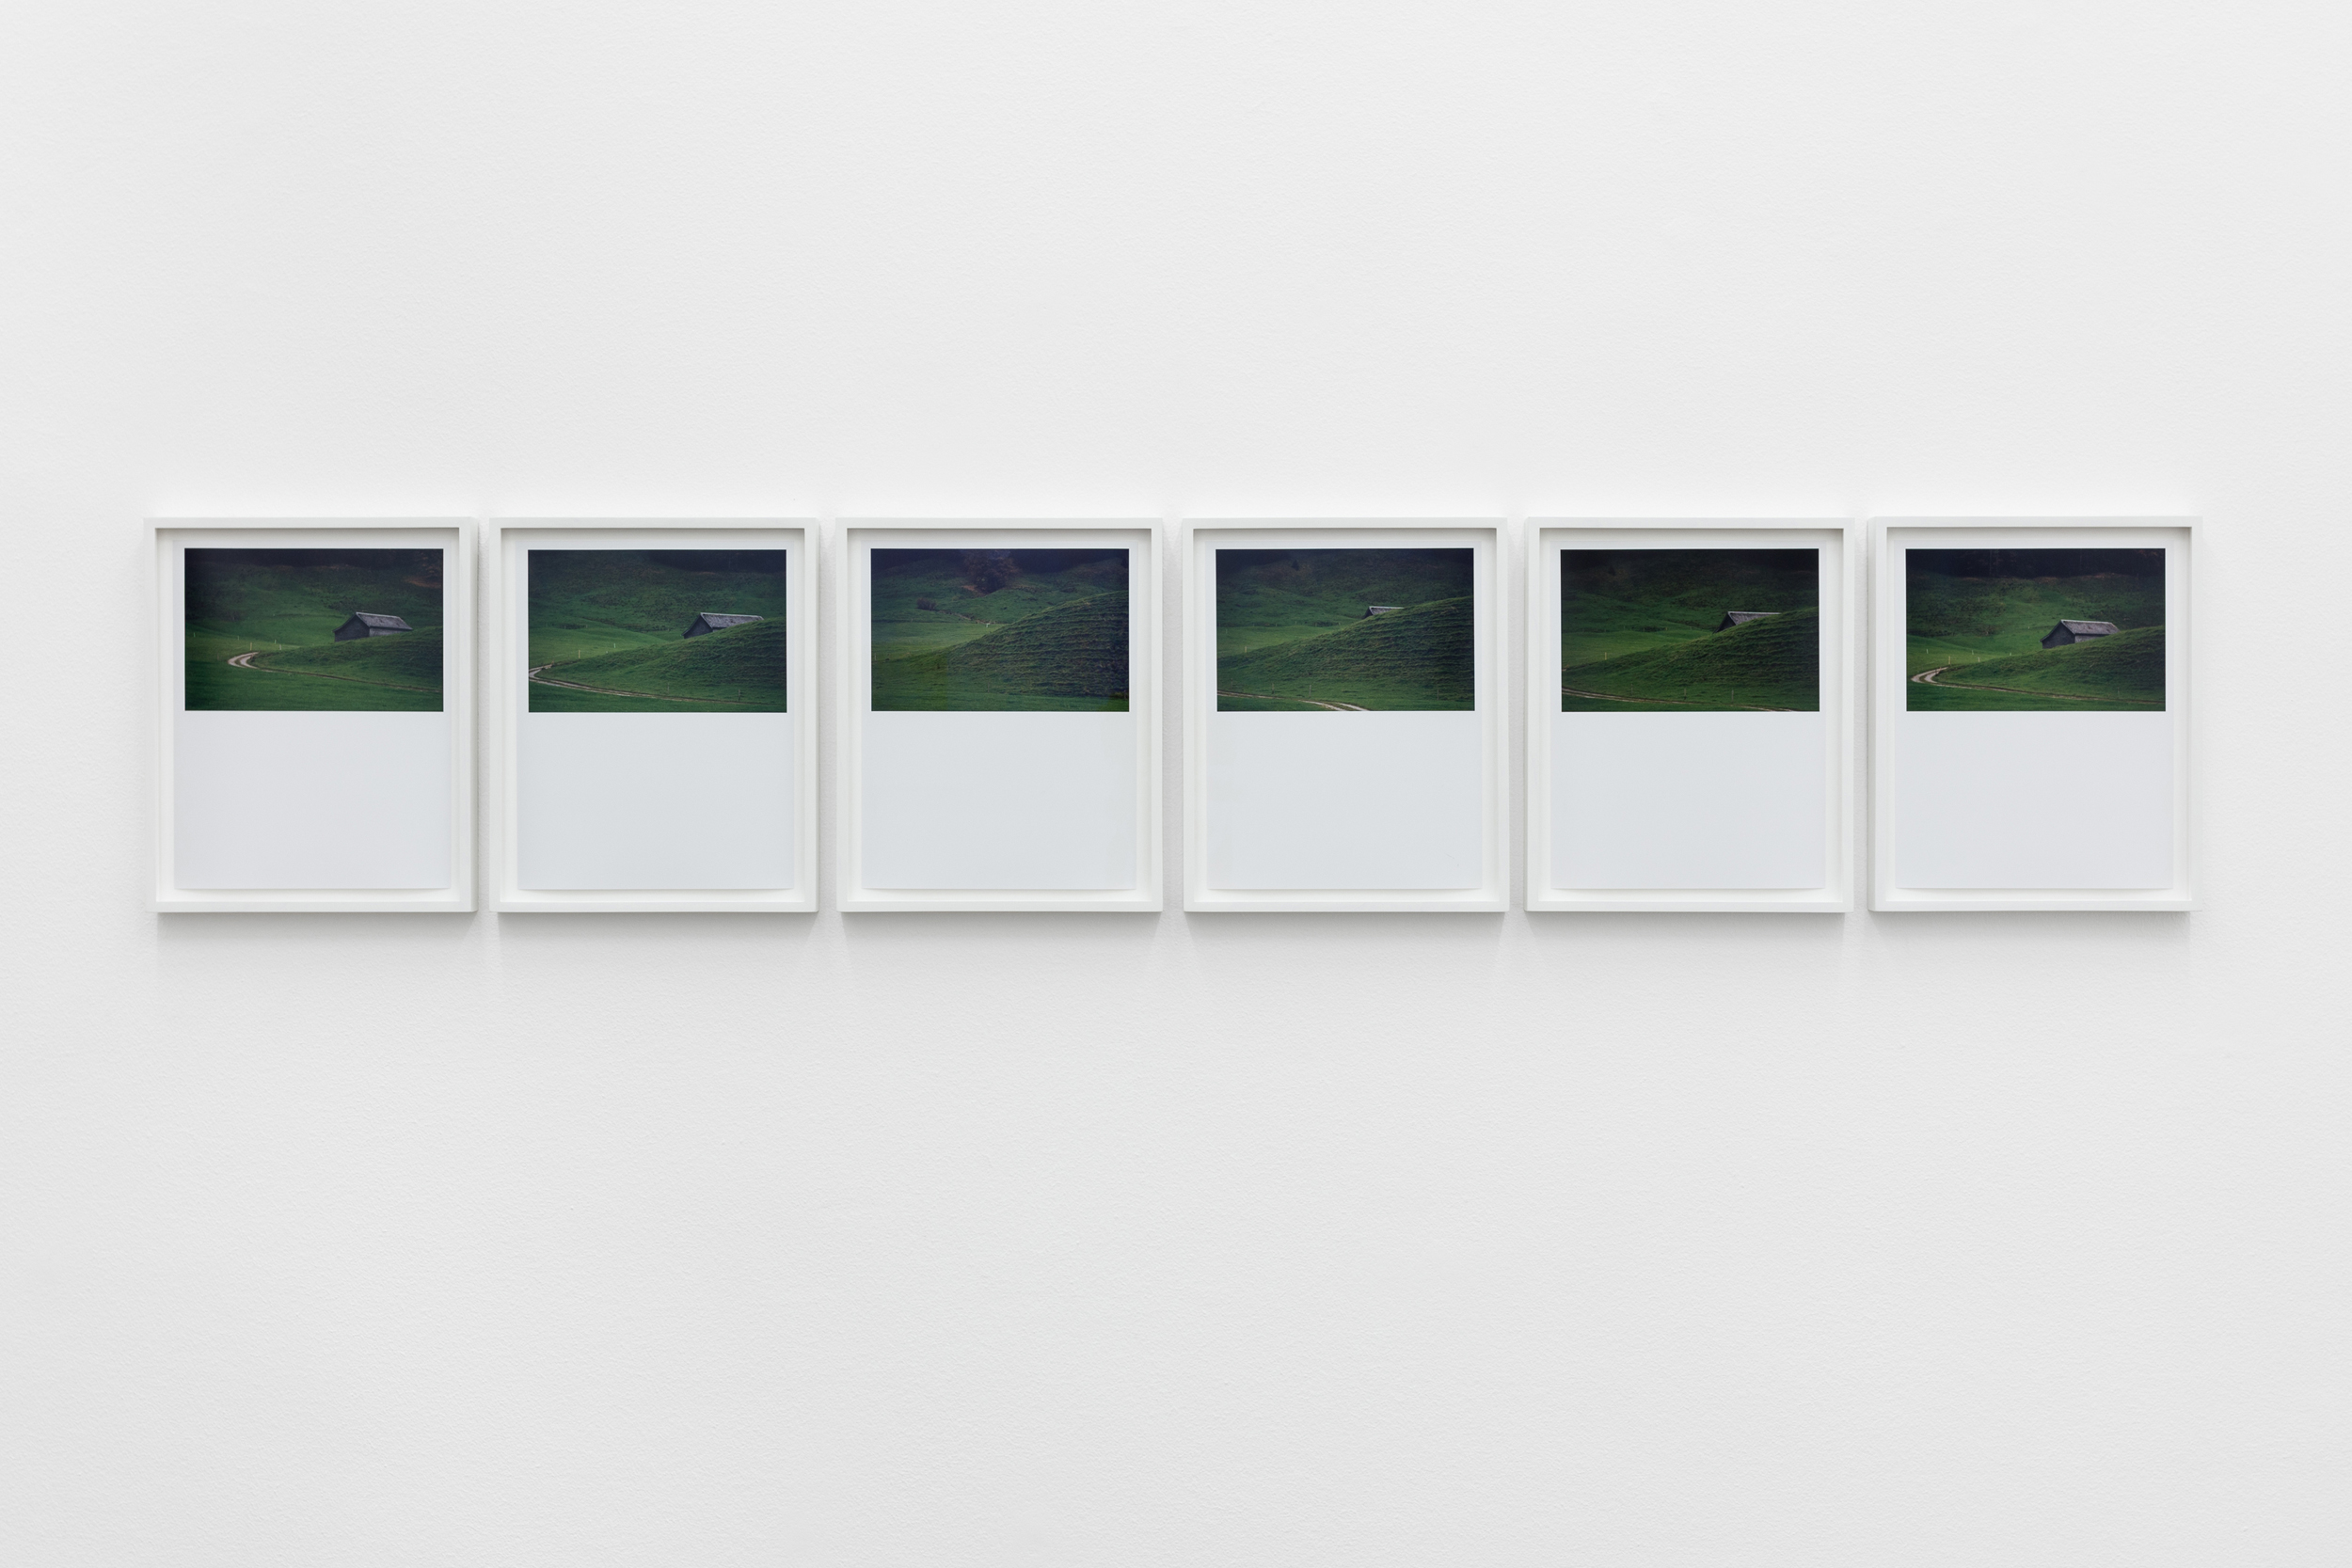 Daniel Gustav Cramer, Tales 63 (Chräzerenwald, Appenzell, Switzerland, November 2013), 2014. 6 C-prints. 25 × 21 cm (each)
